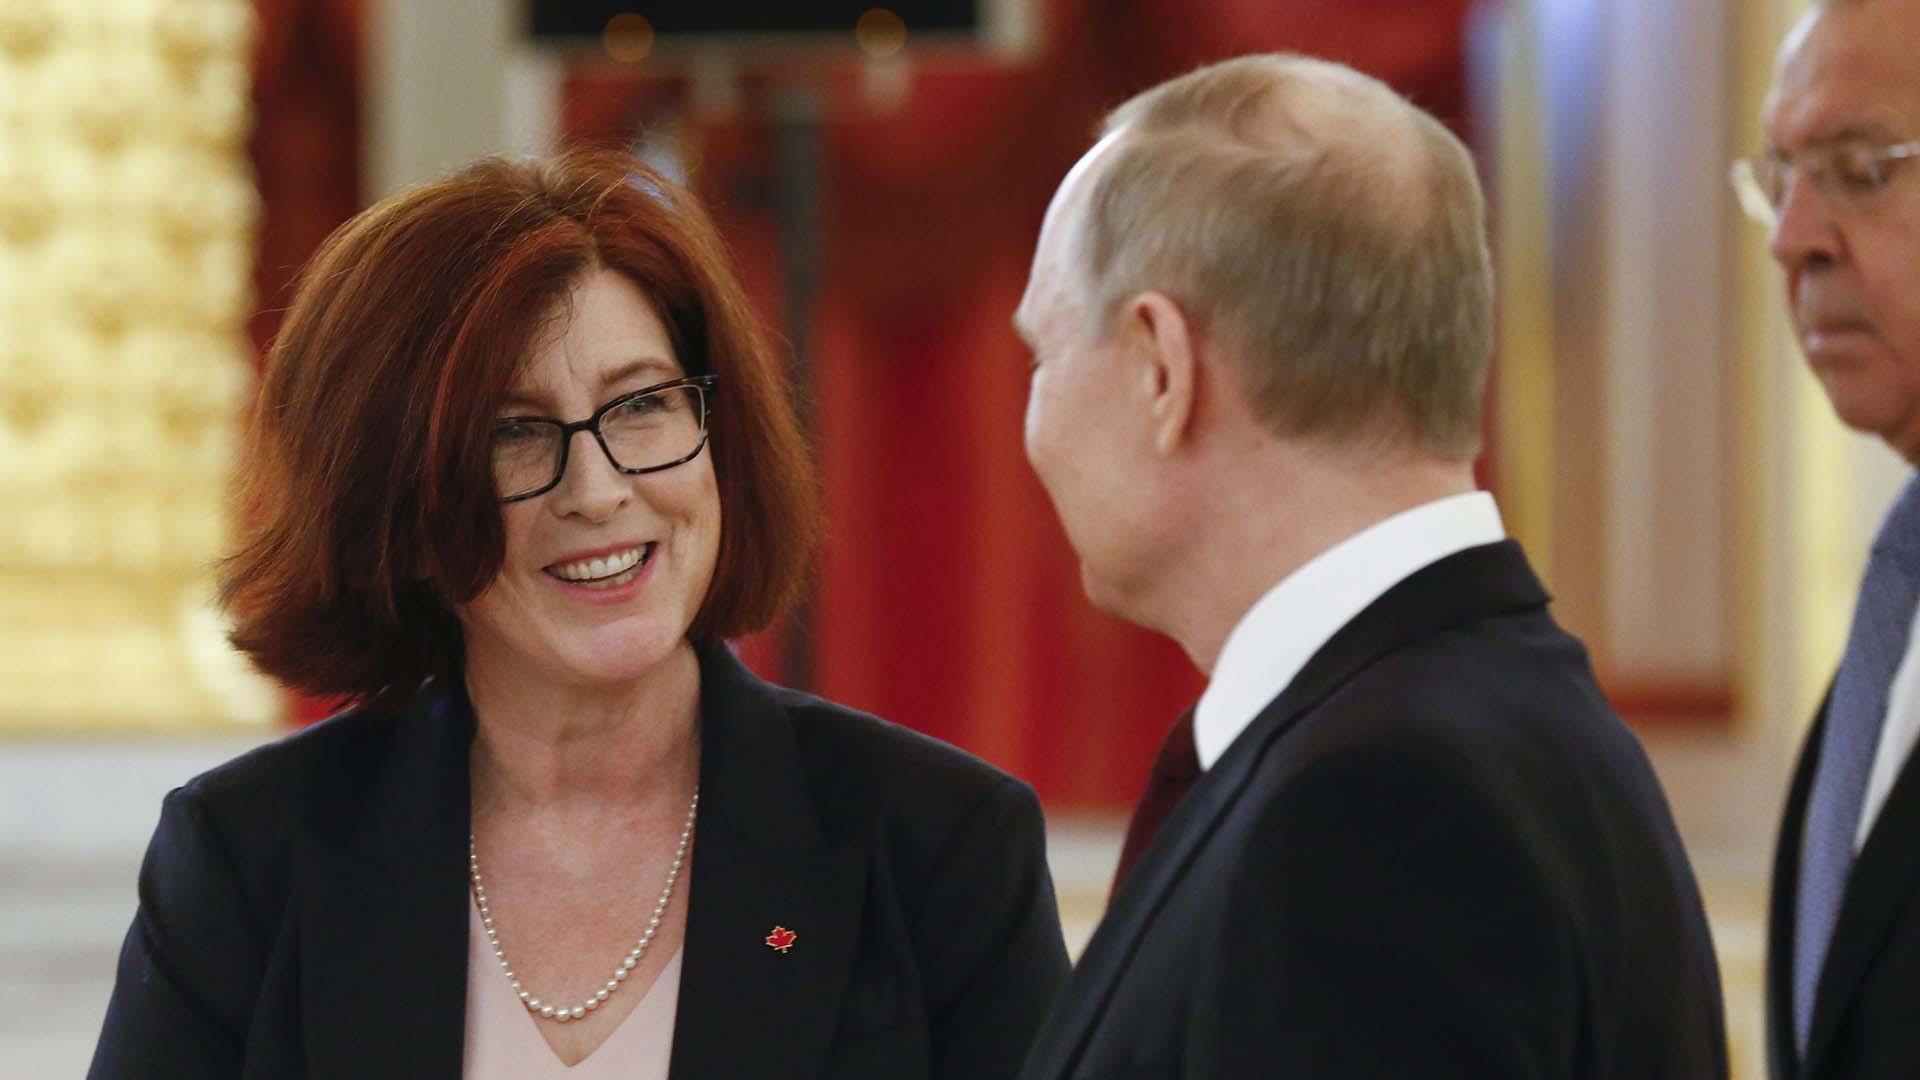 Le président russe Vladimir Poutine, au centre, s'entretient avec l'ambassadrice du Canada en Russie, Alison LeClaire, sous le regard du ministre russe des Affaires étrangères Sergei Lavrov, à droite, lors d'une cérémonie au Kremlin, à Moscou, en Russie, en février 2020.